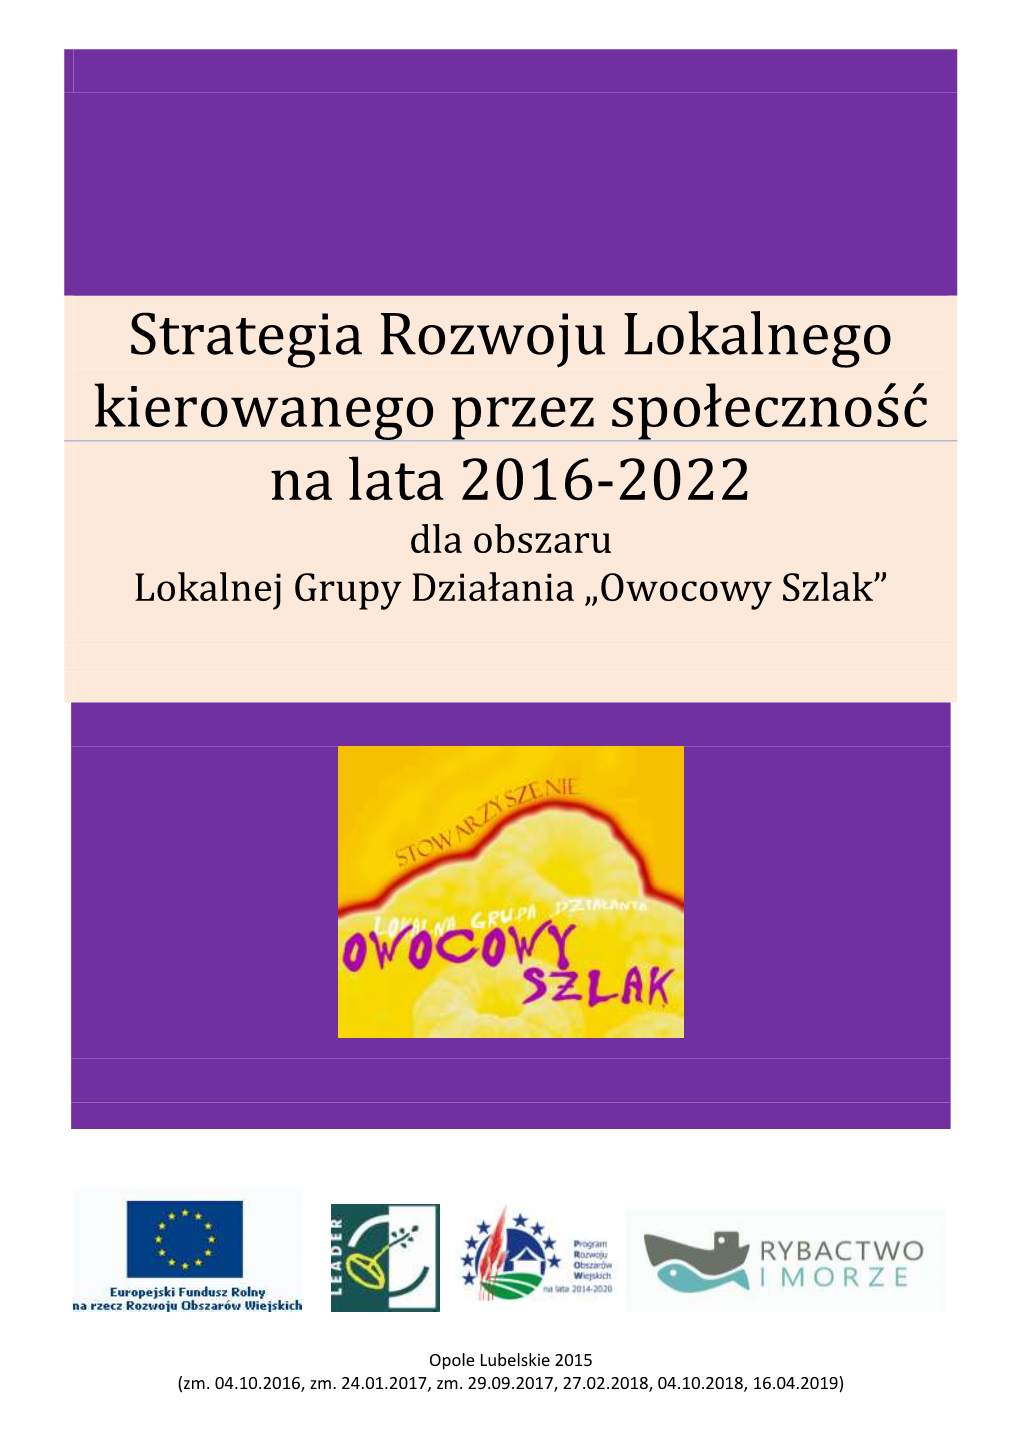 Strategia Rozwoju Lokalnego Kierowanego Przez Społeczność Na Lata 2016-2022 Dla Obszaru Lokalnej Grupy Działania „Owocowy Szlak”